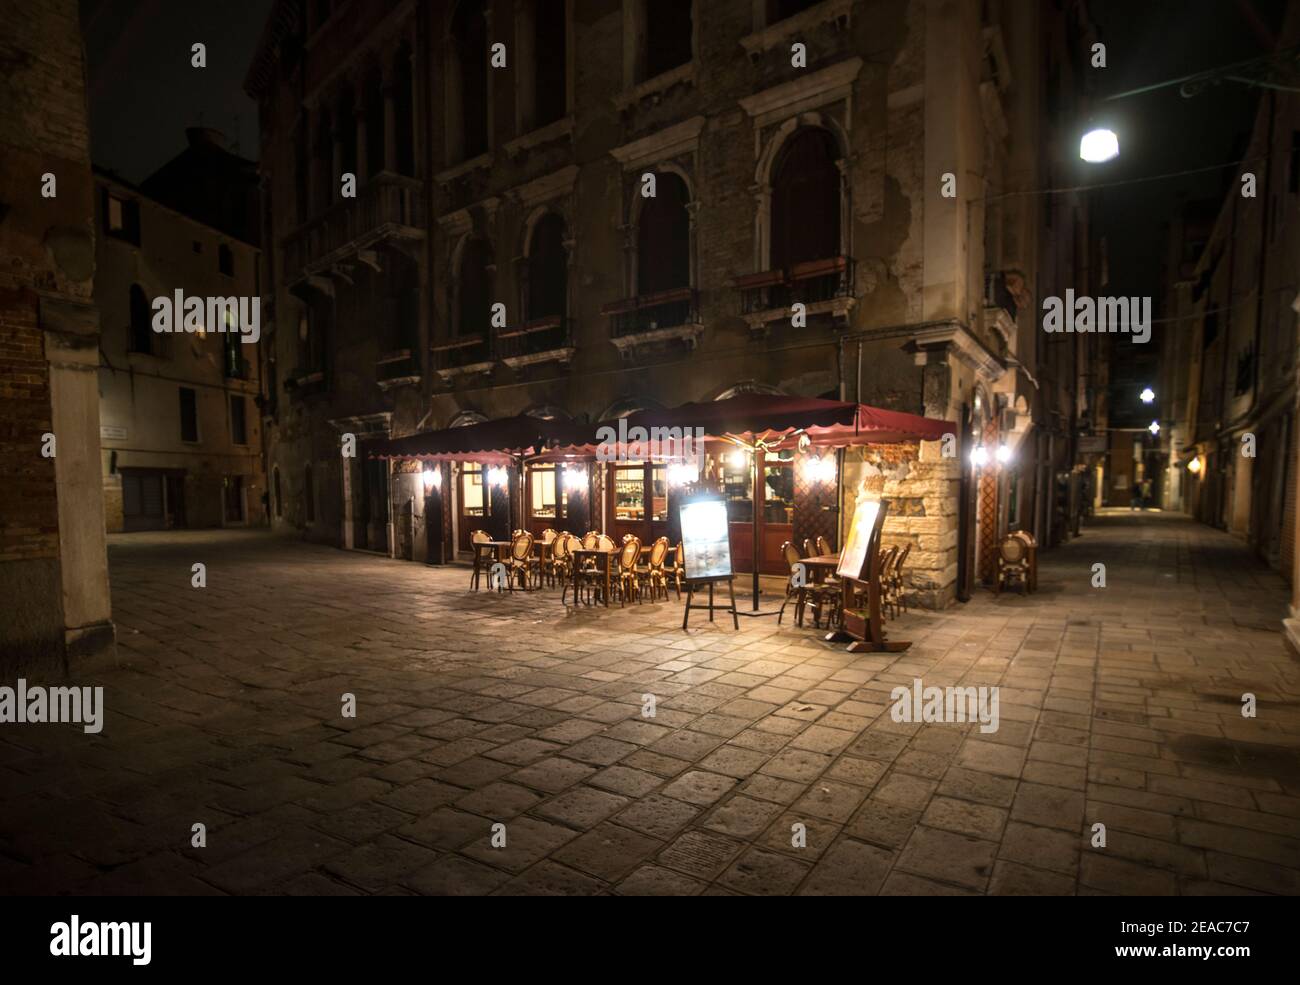 illuminated eatery, Venice Stock Photo